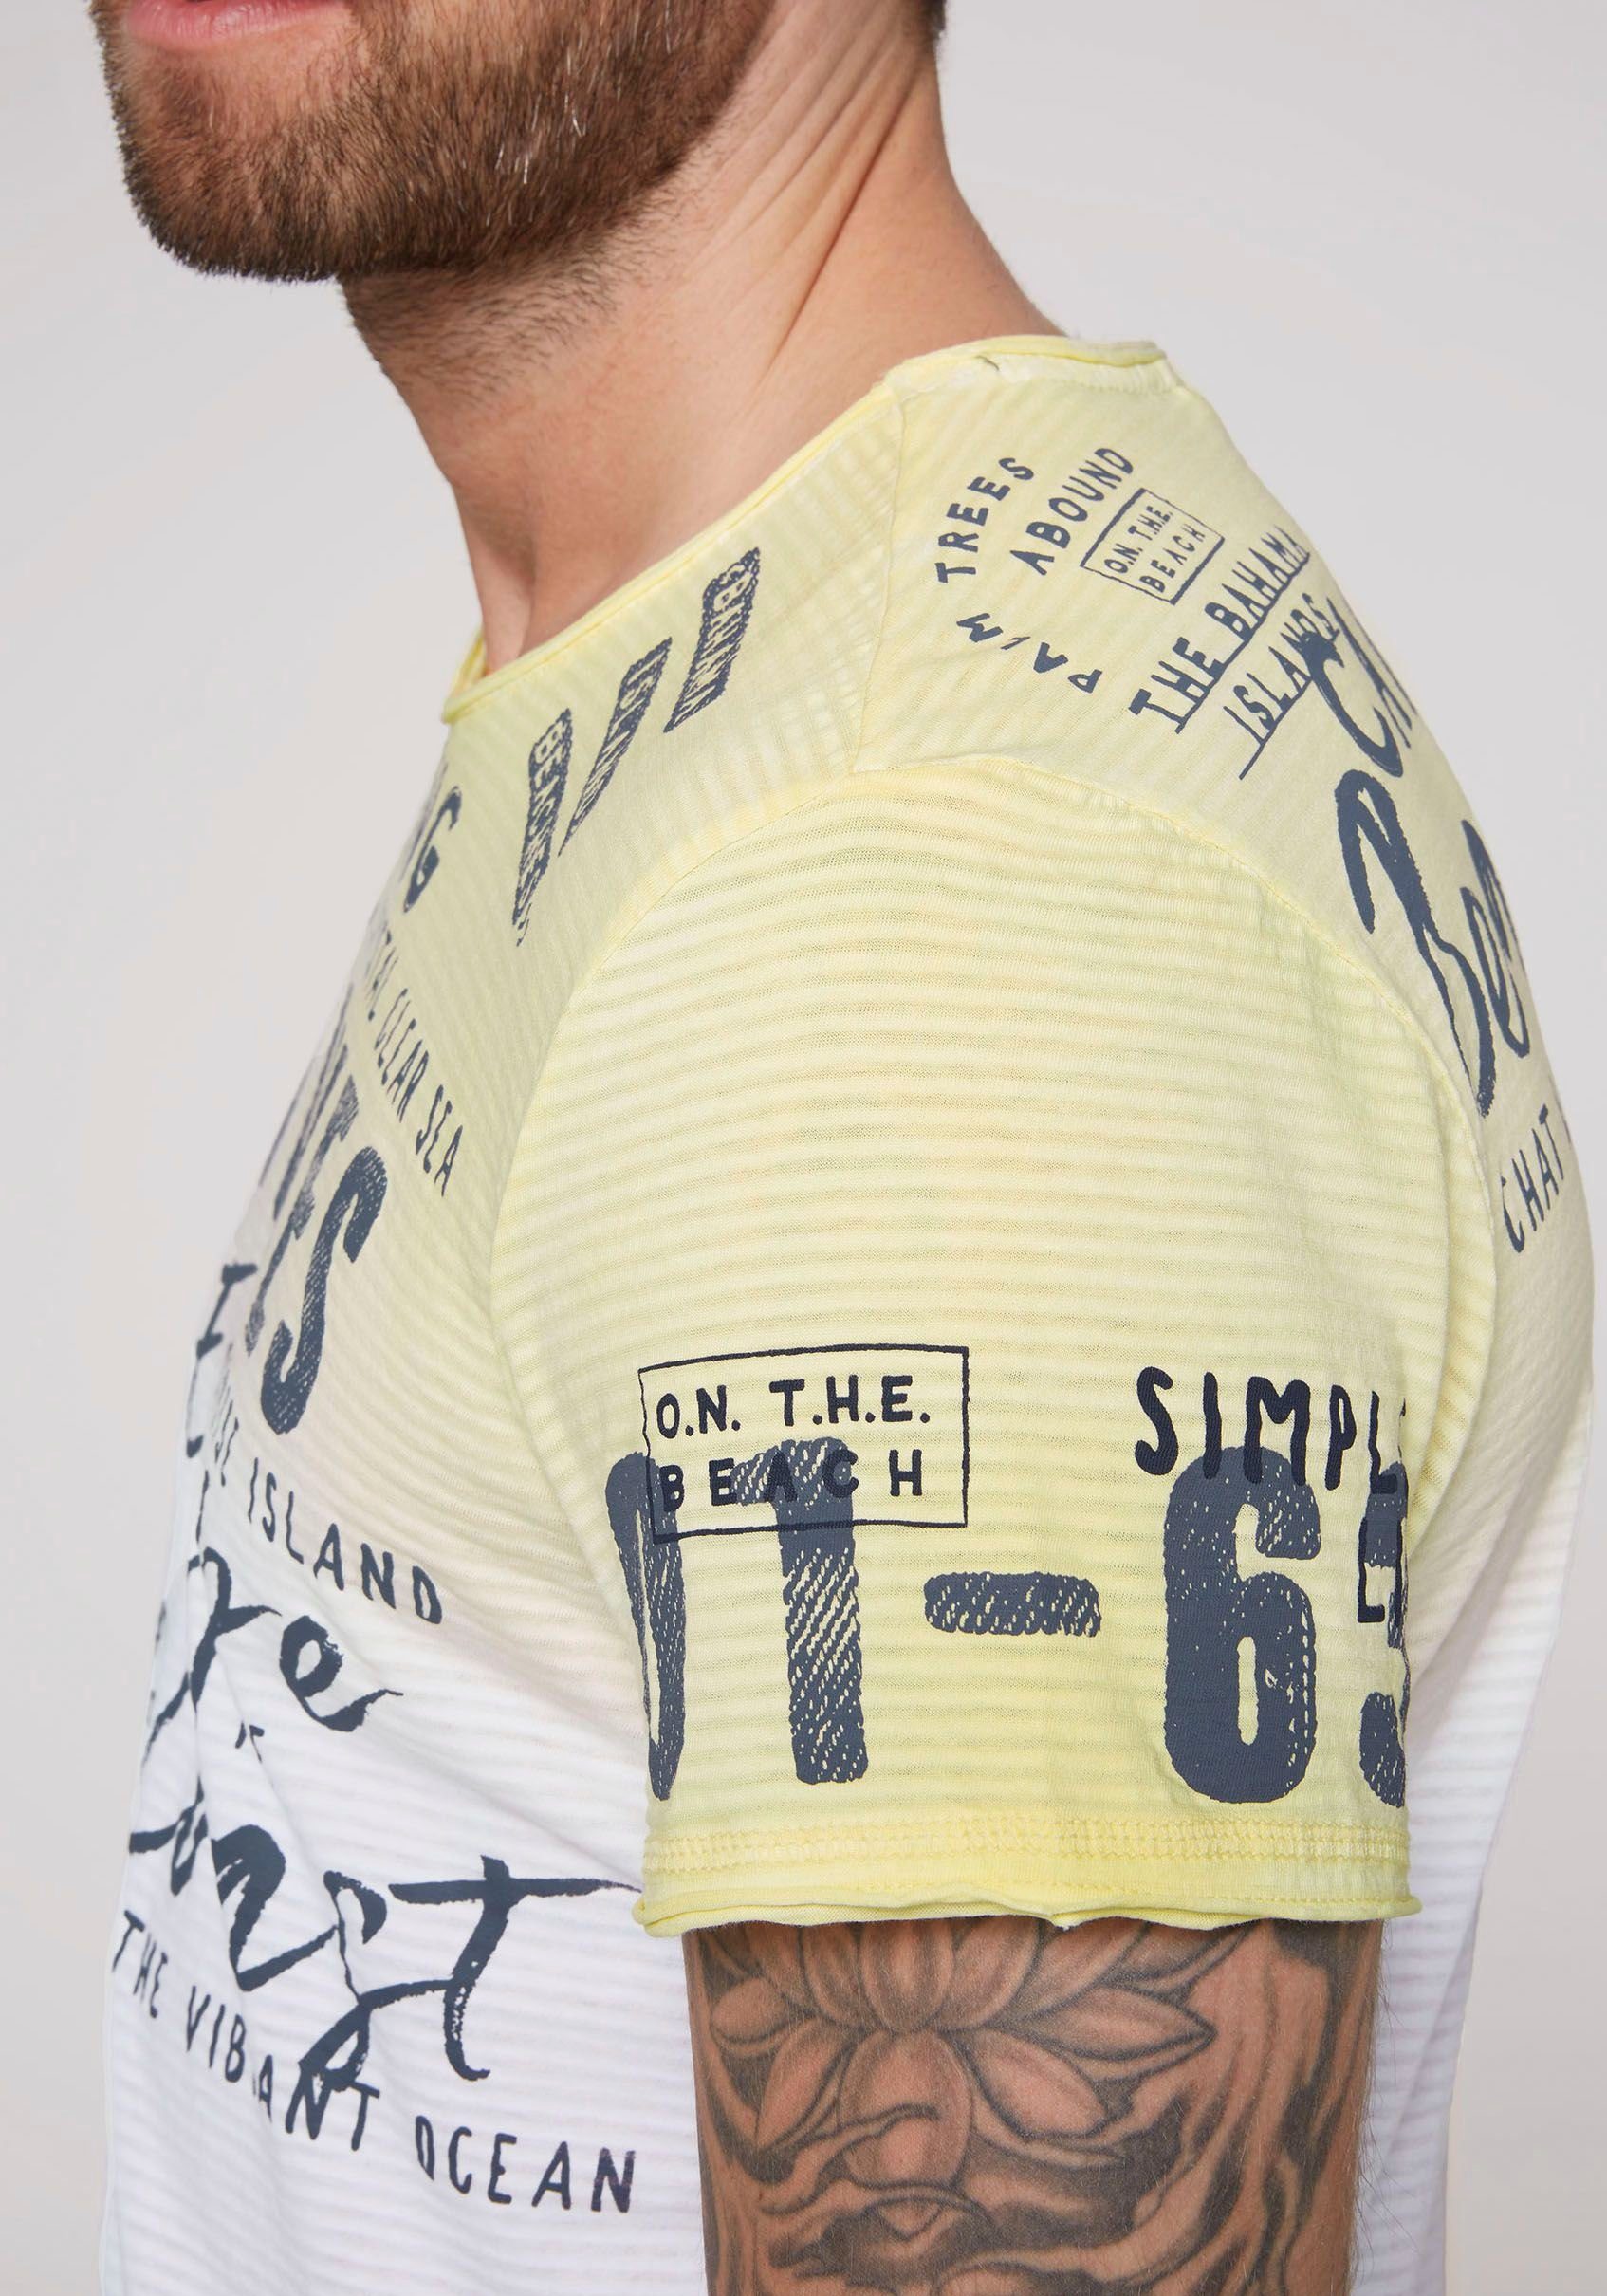 T-Shirt CAMP Schriftzügen mit DAVID sun banana